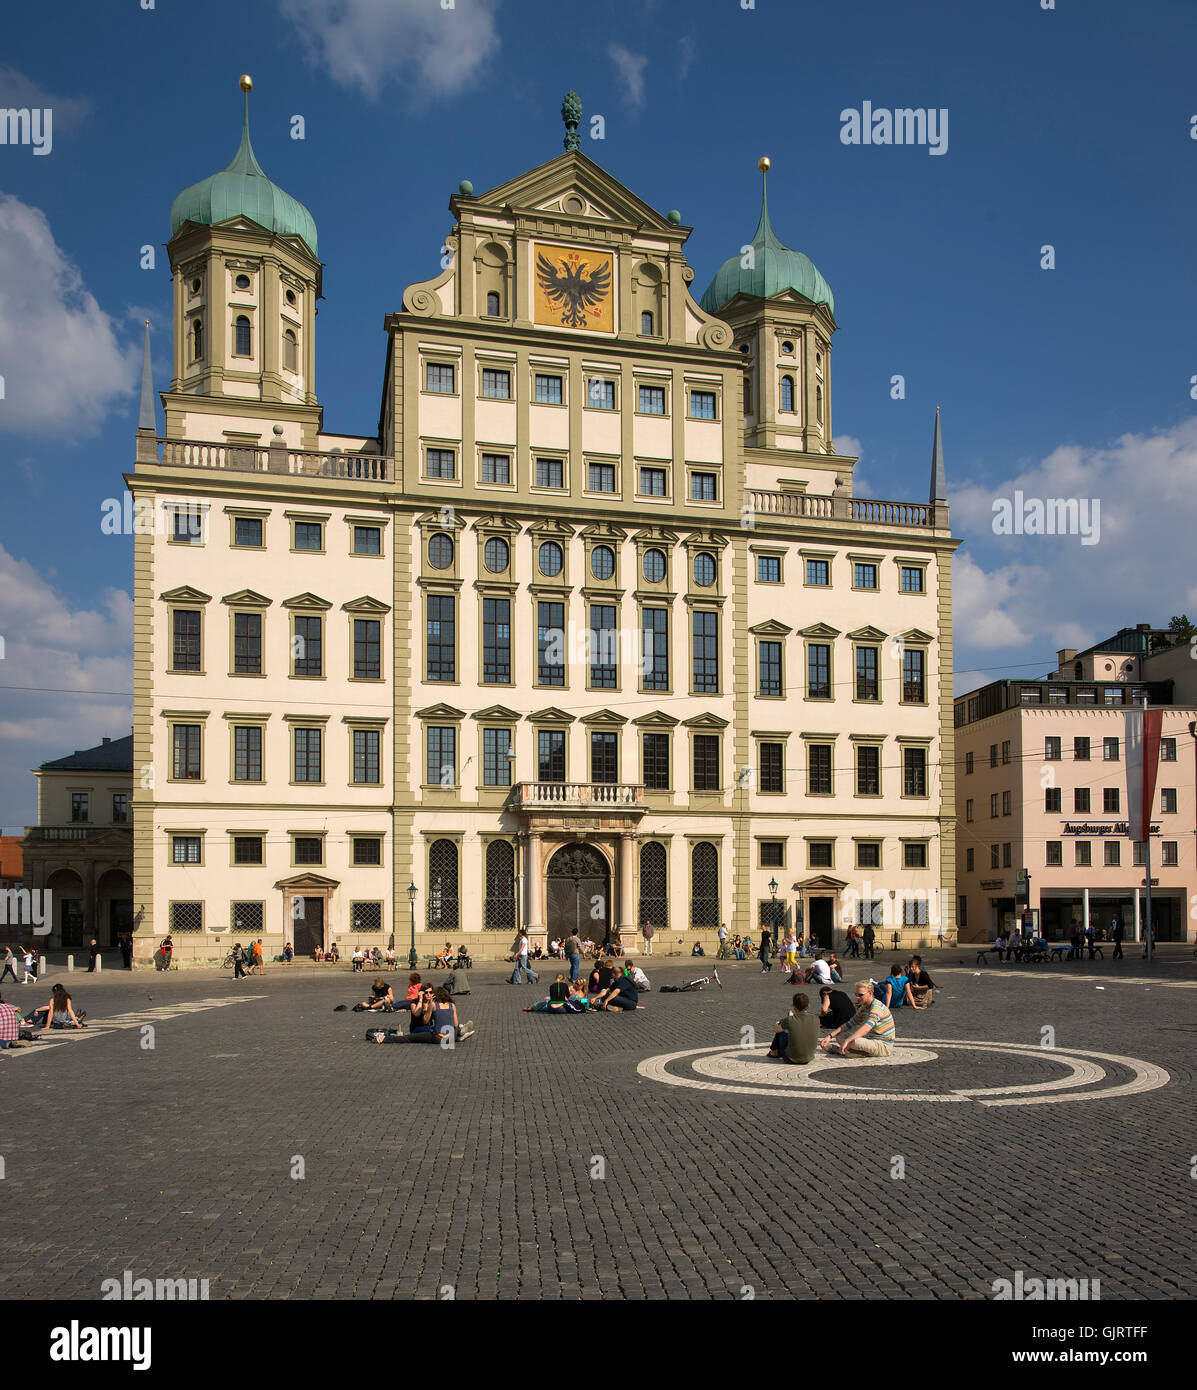 Bavaria ciudades históricas Foto de stock